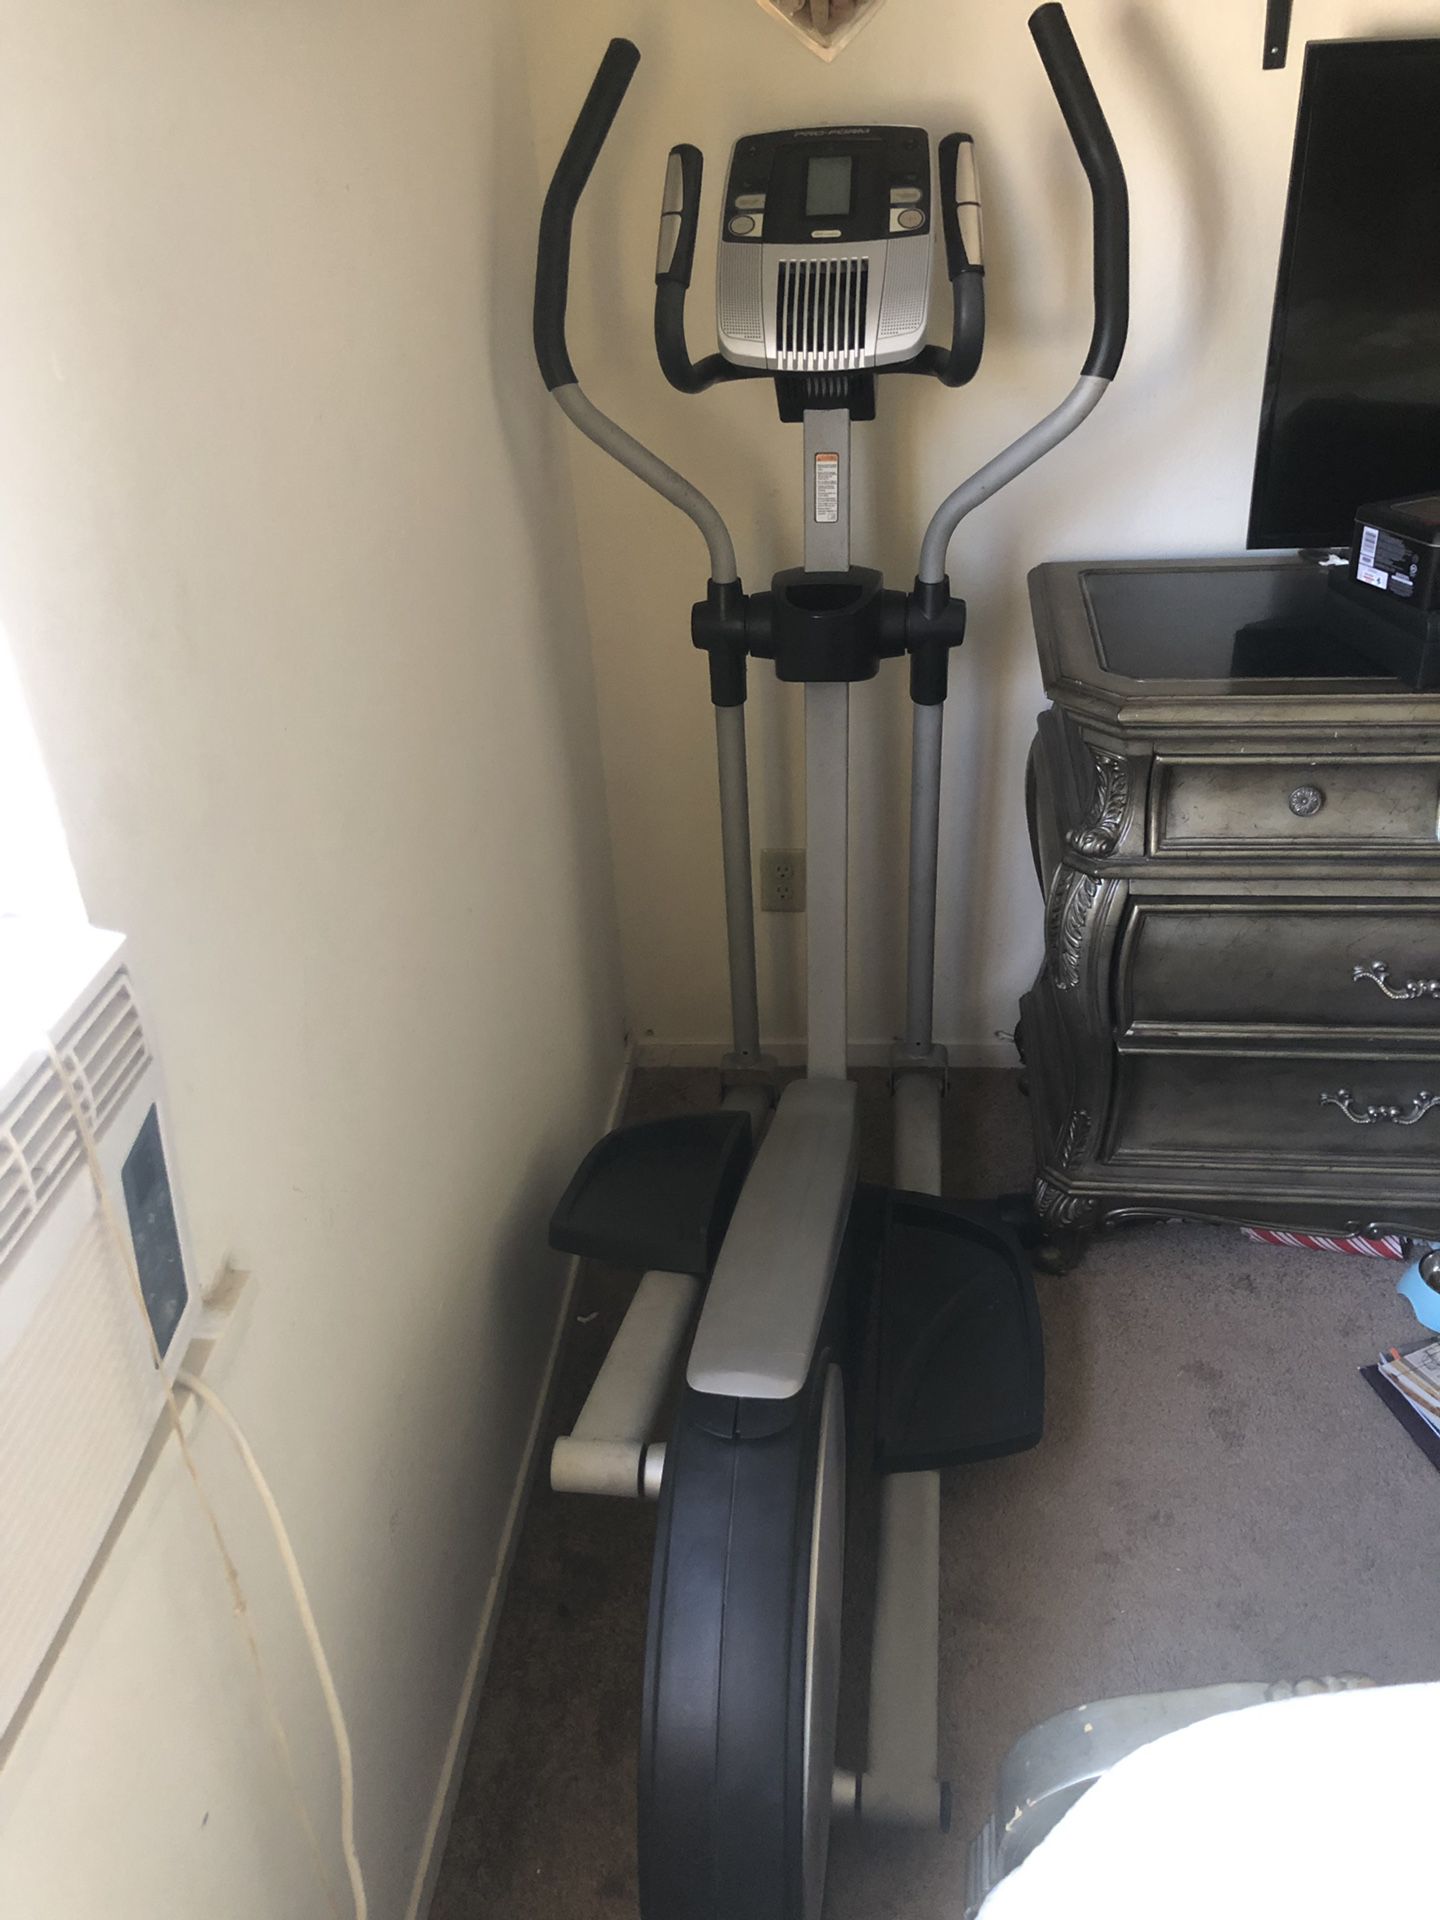 Exercise machine Pro-Form